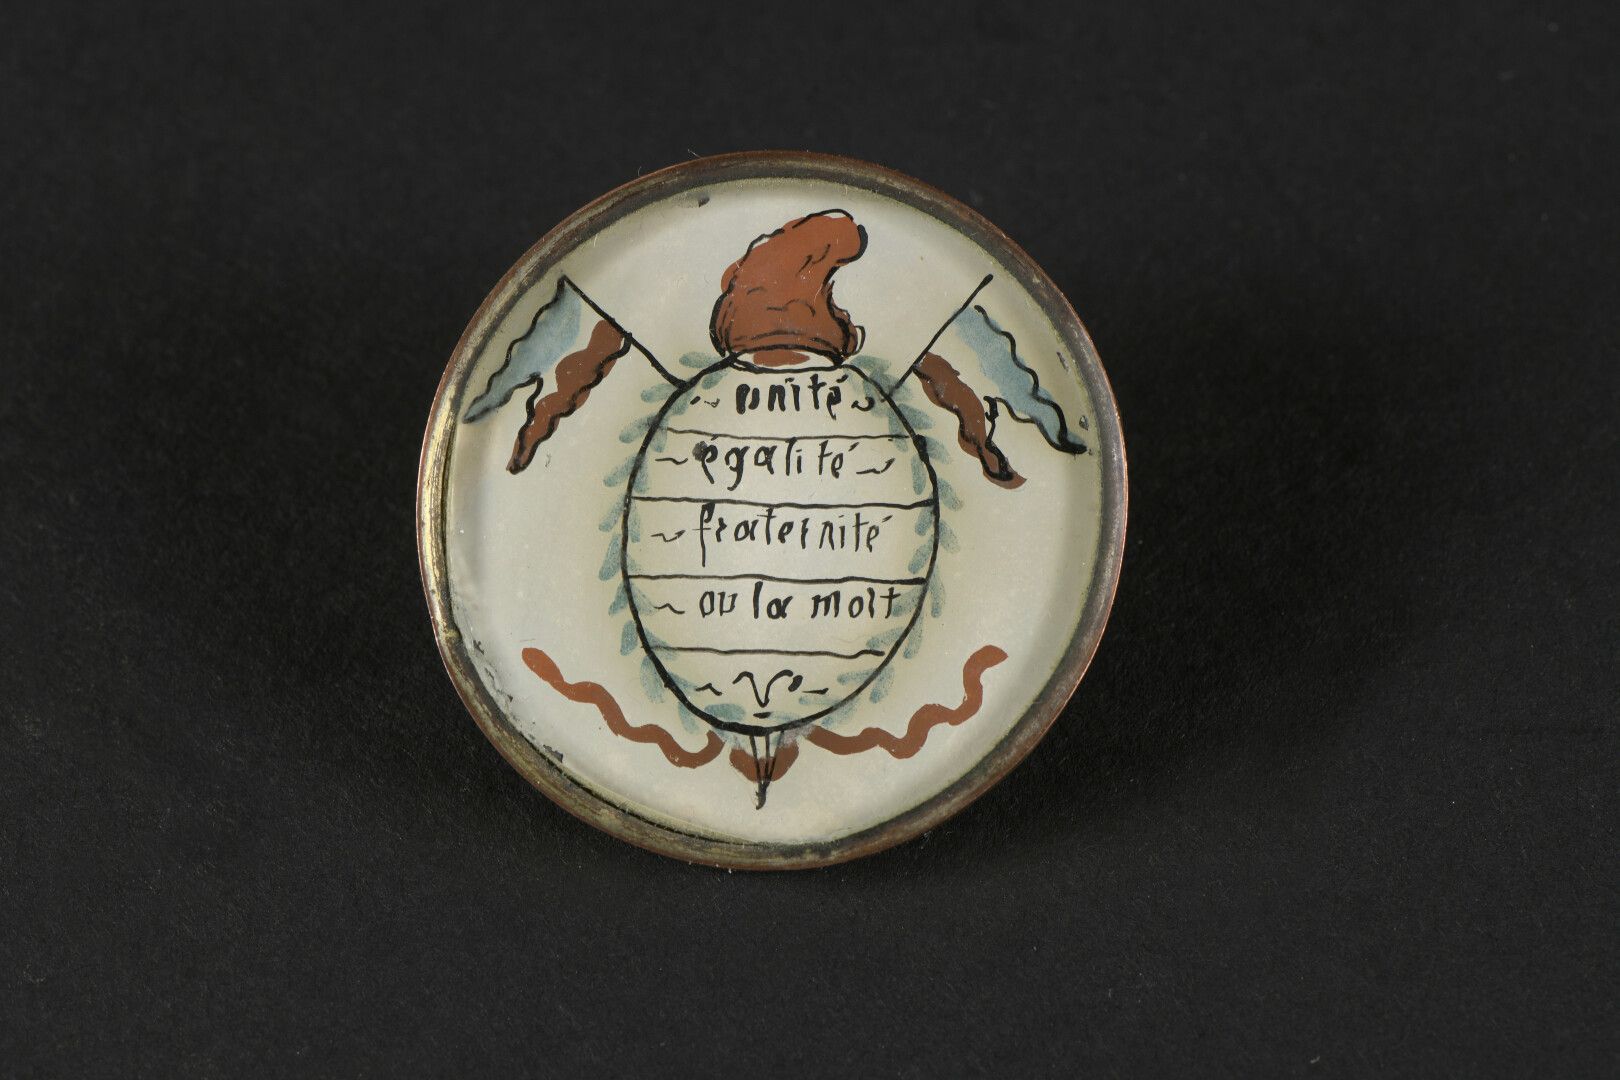 Null 共和党纽扣，约1789年，固定在玻璃下，上面绘有团结、平等、博爱或死亡的箴言。

顶端是弗里吉亚式的帽子，下面是带铜环的平板玻璃；金属底座和附件。